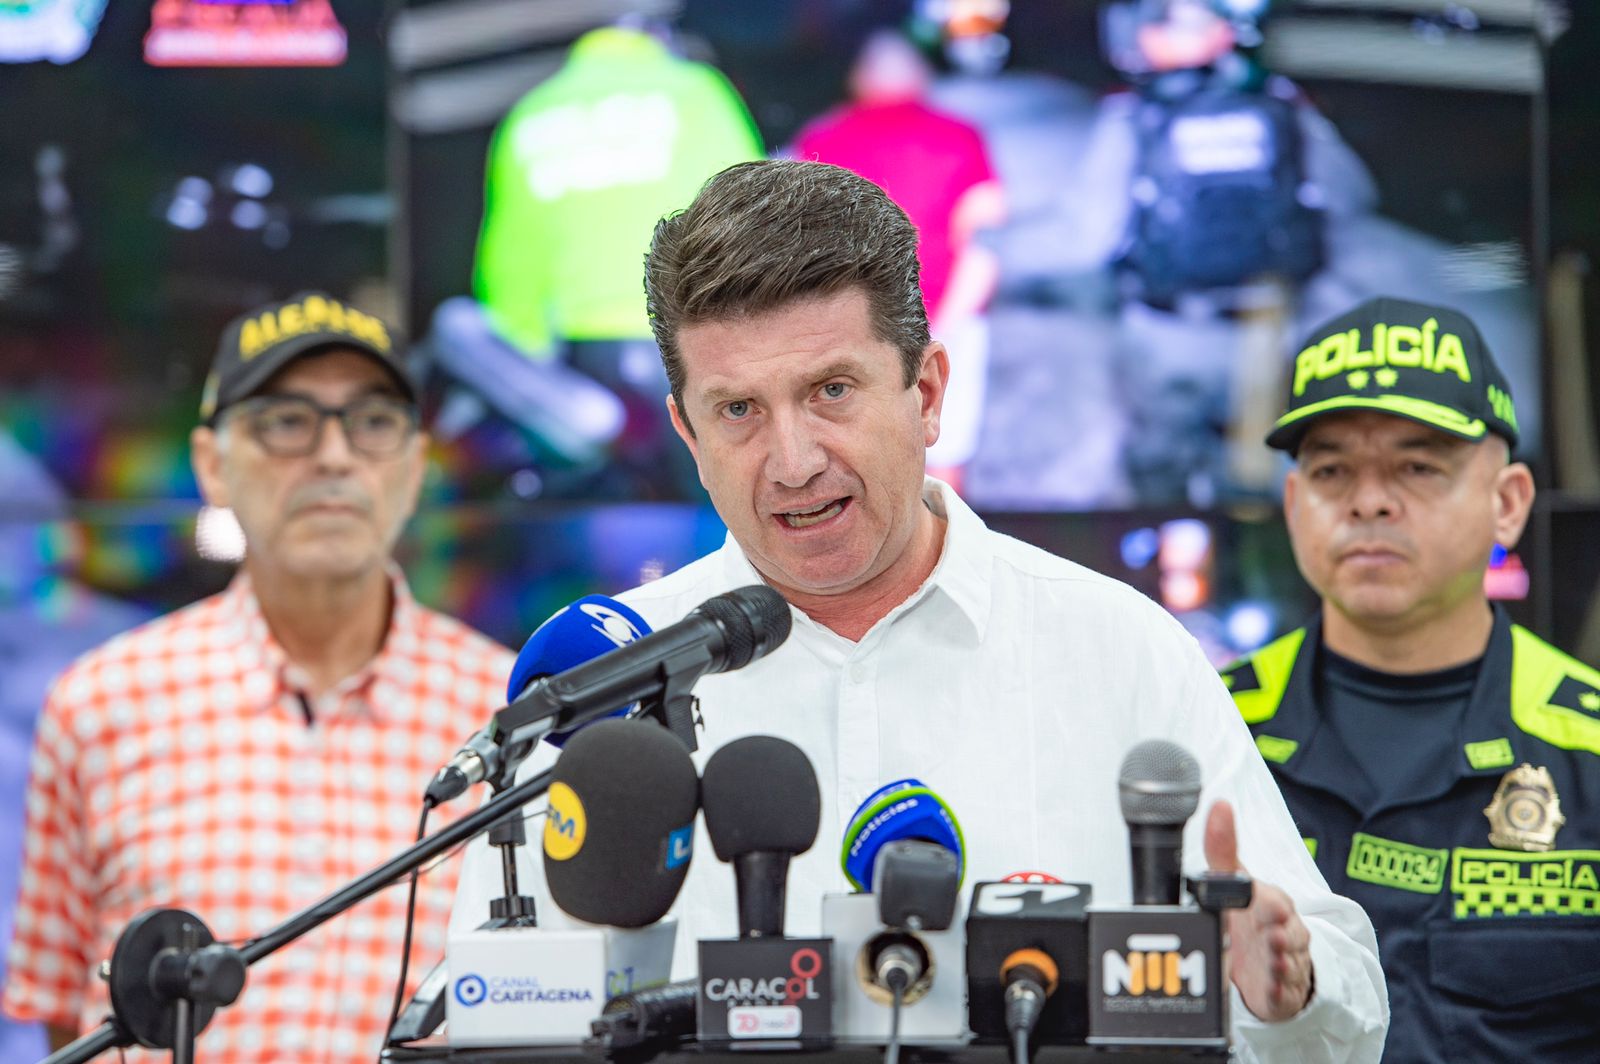 Tras los reportes de la muerte de Gentil Duarte, ministro de Defensa de Colombia asegura que Maduro protege terroristas